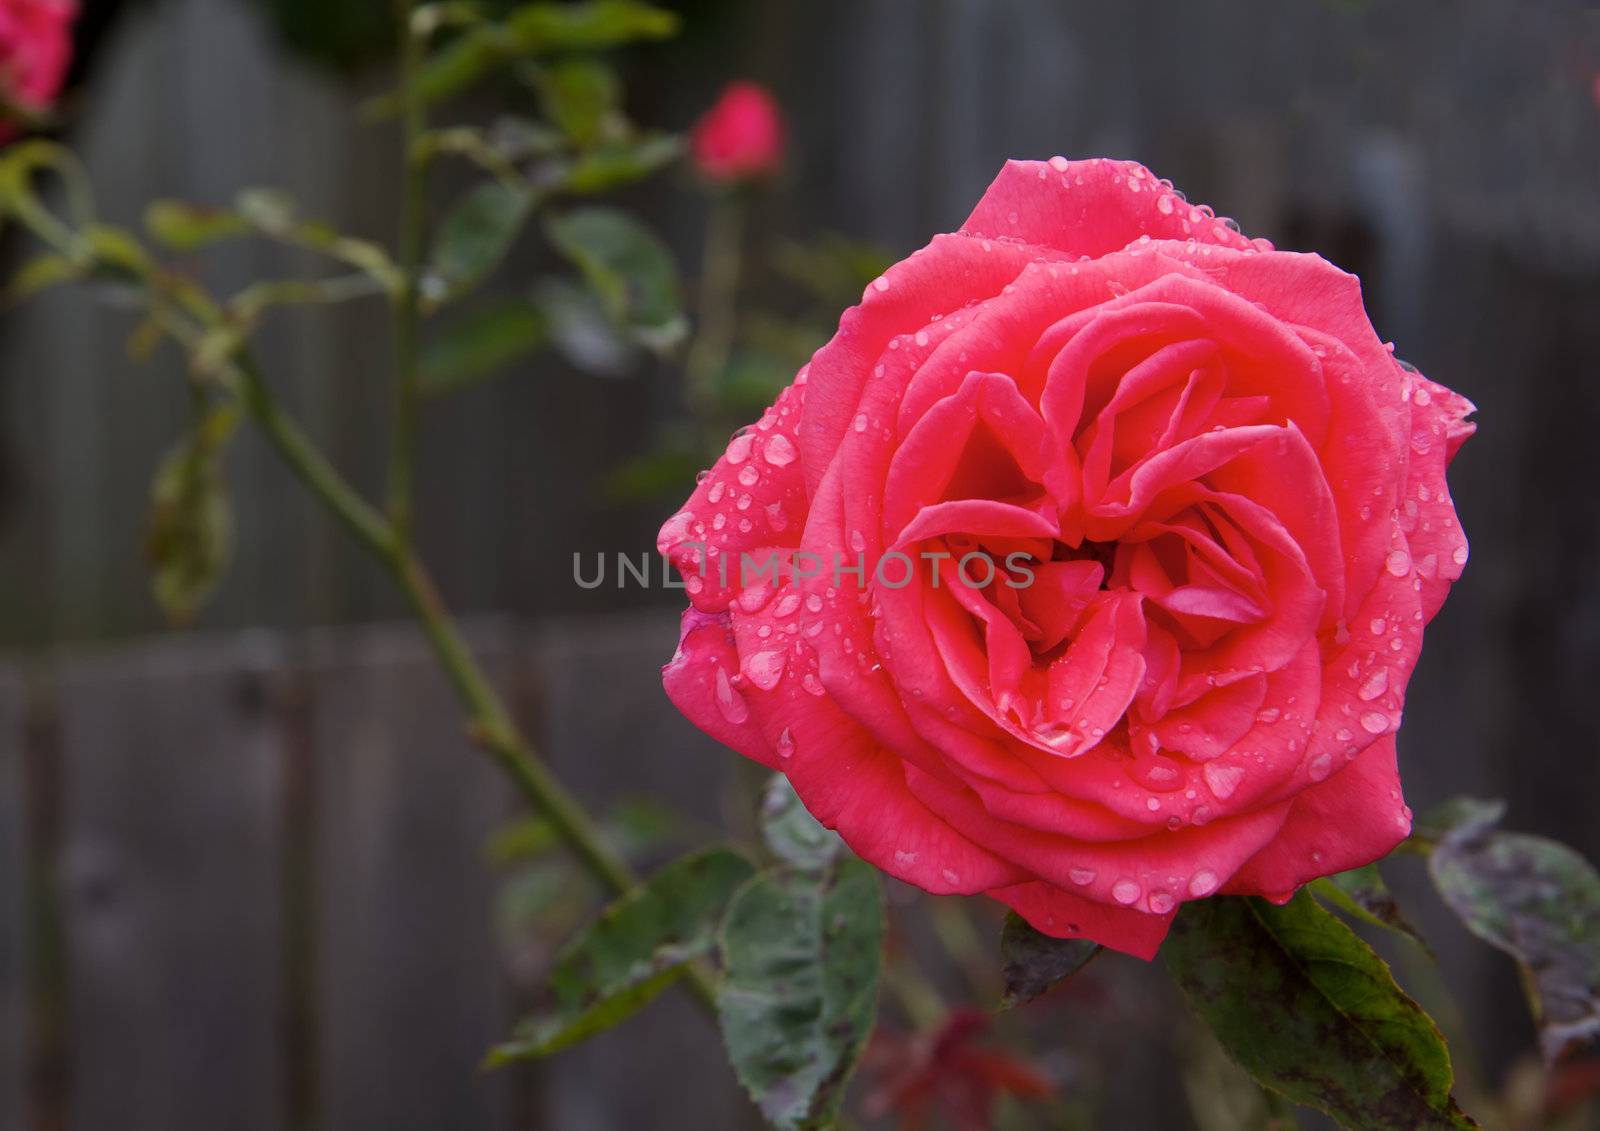 Wet Red Rose by bobkeenan